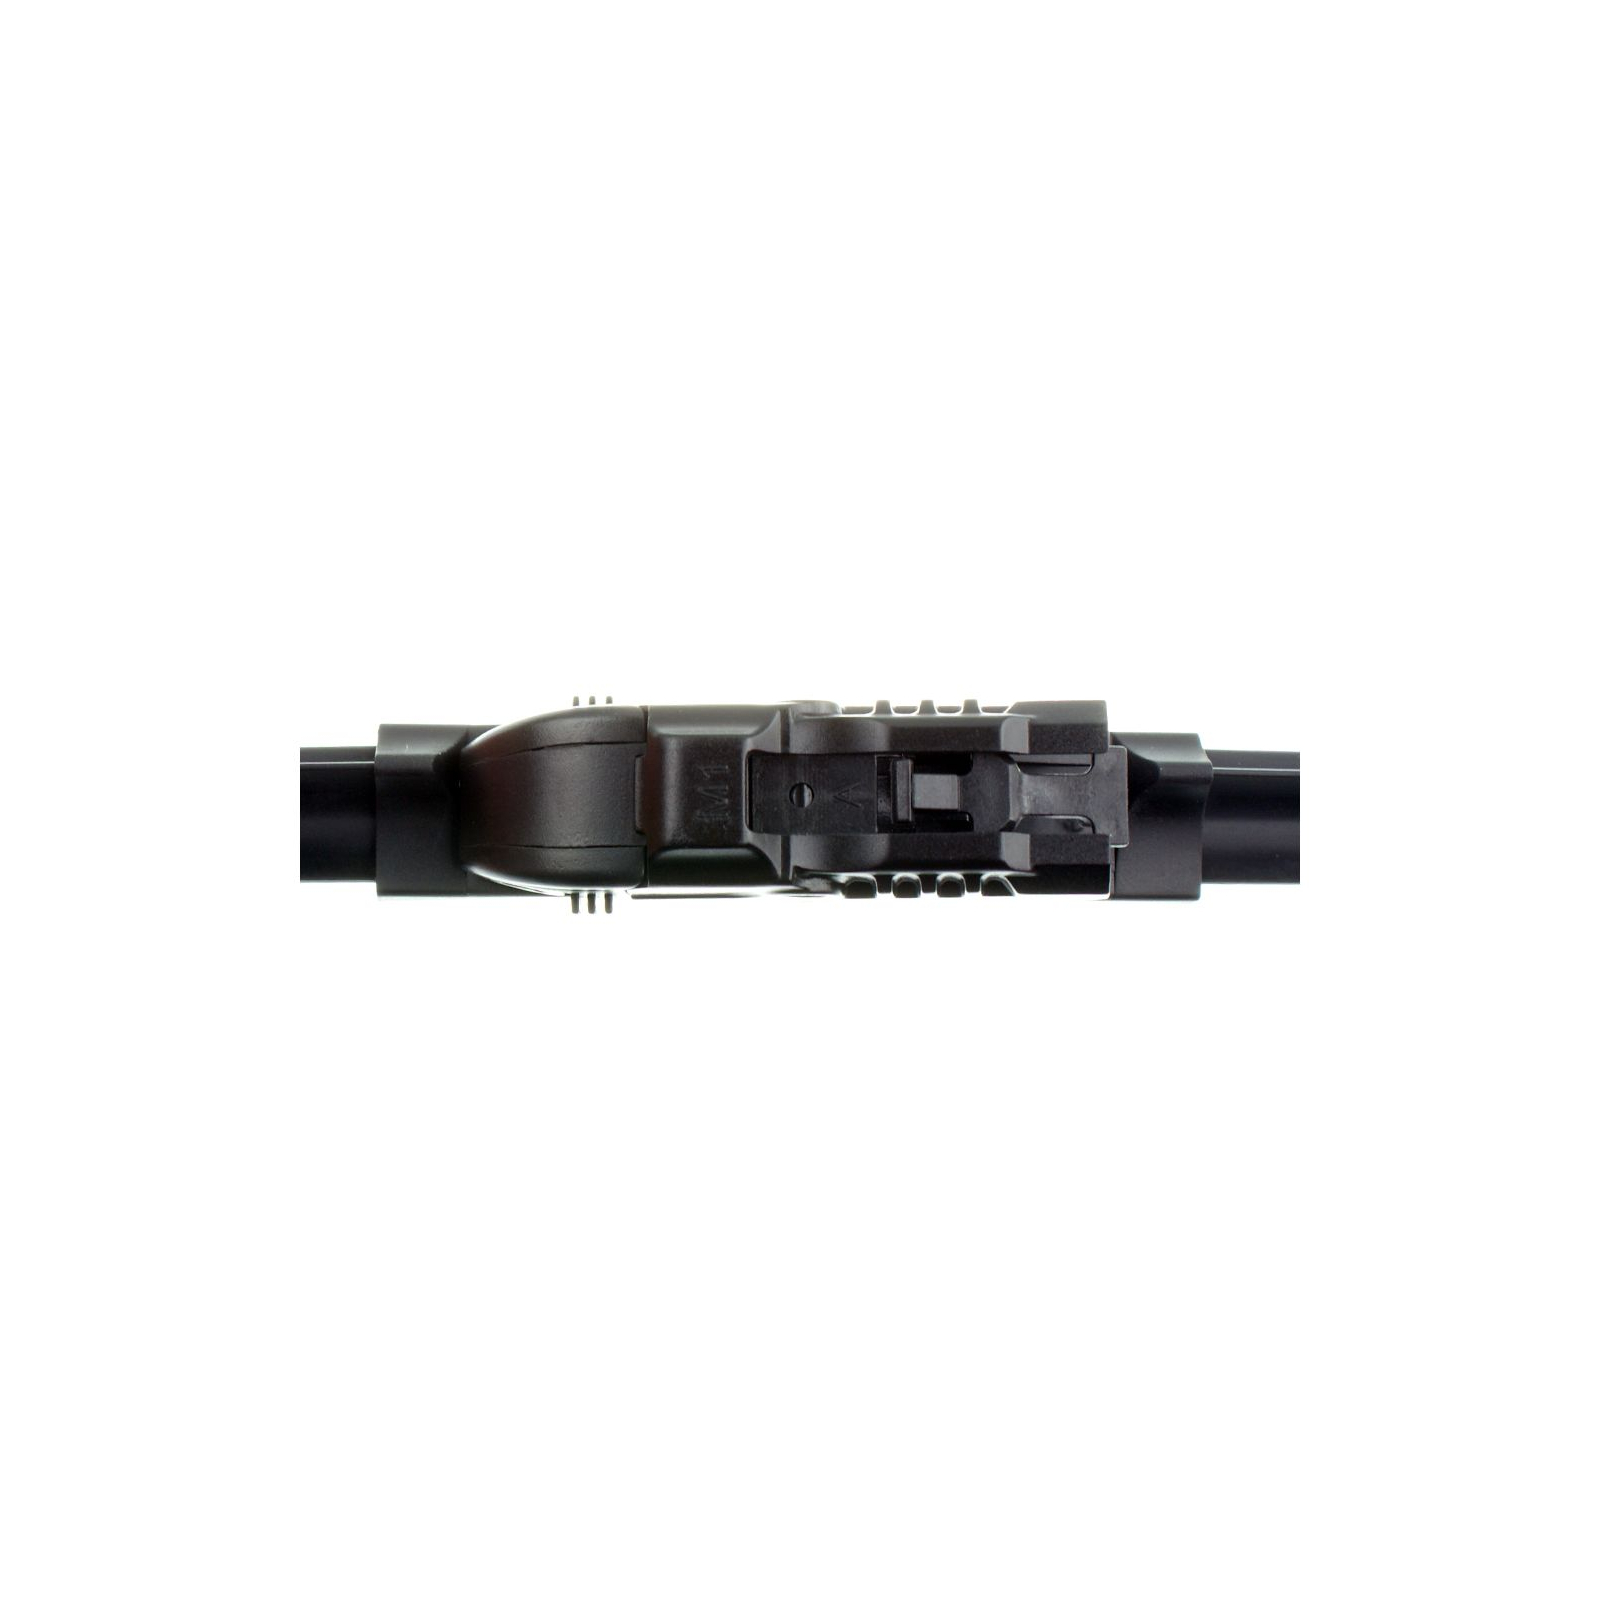 Щетка стеклоочистителя Sheron 600 мм Uni flat (000669) изображение 3